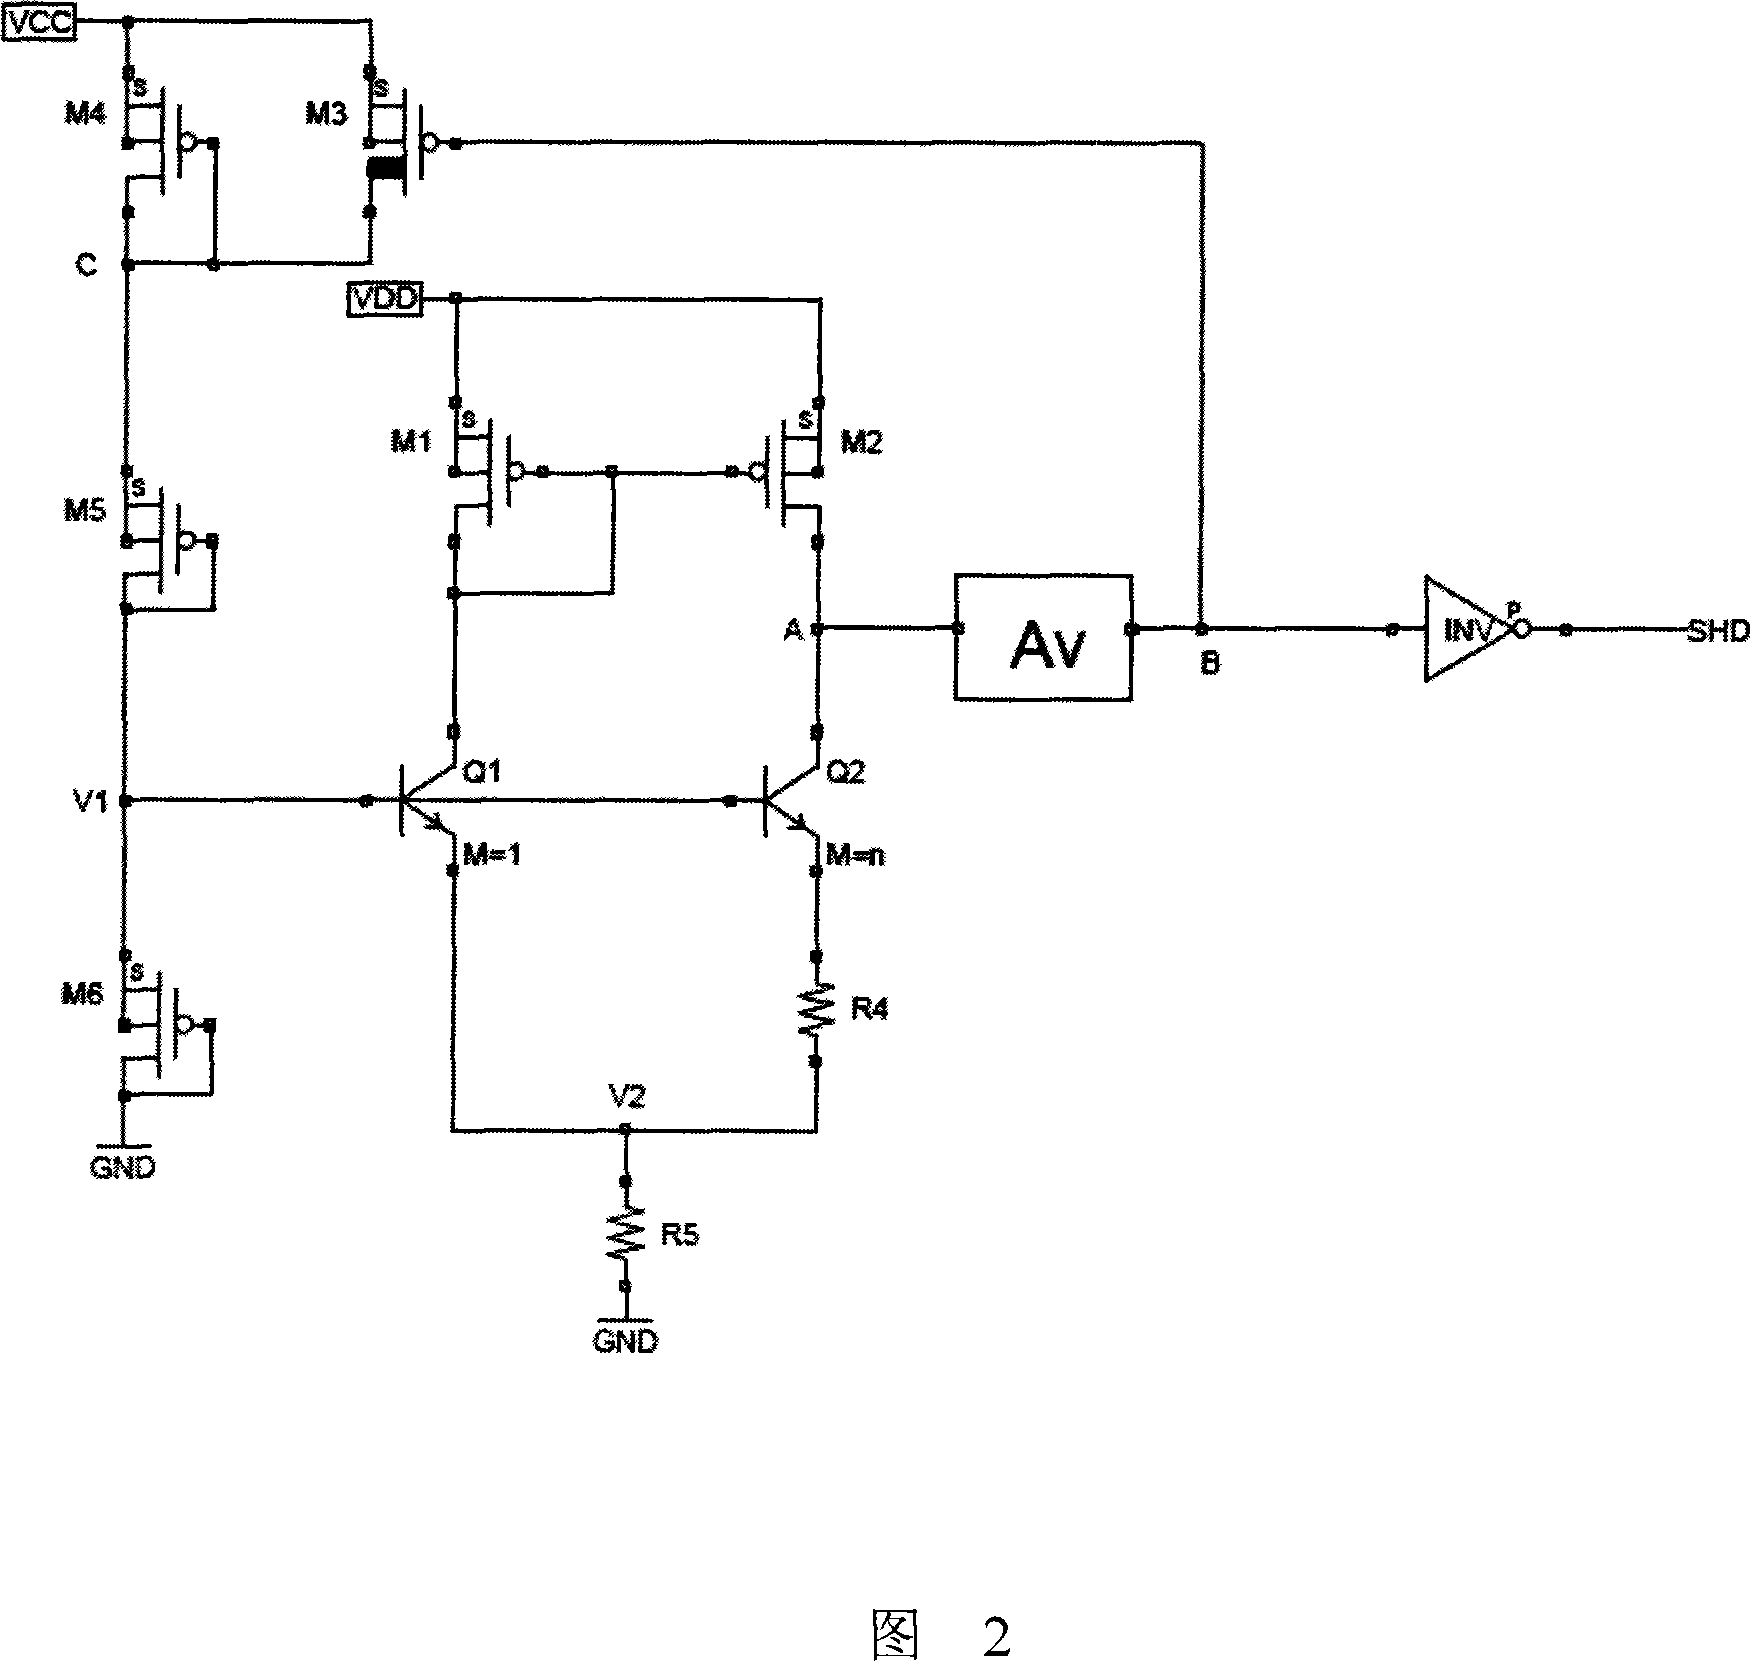 Under voltage locking circuit with temperature compensation